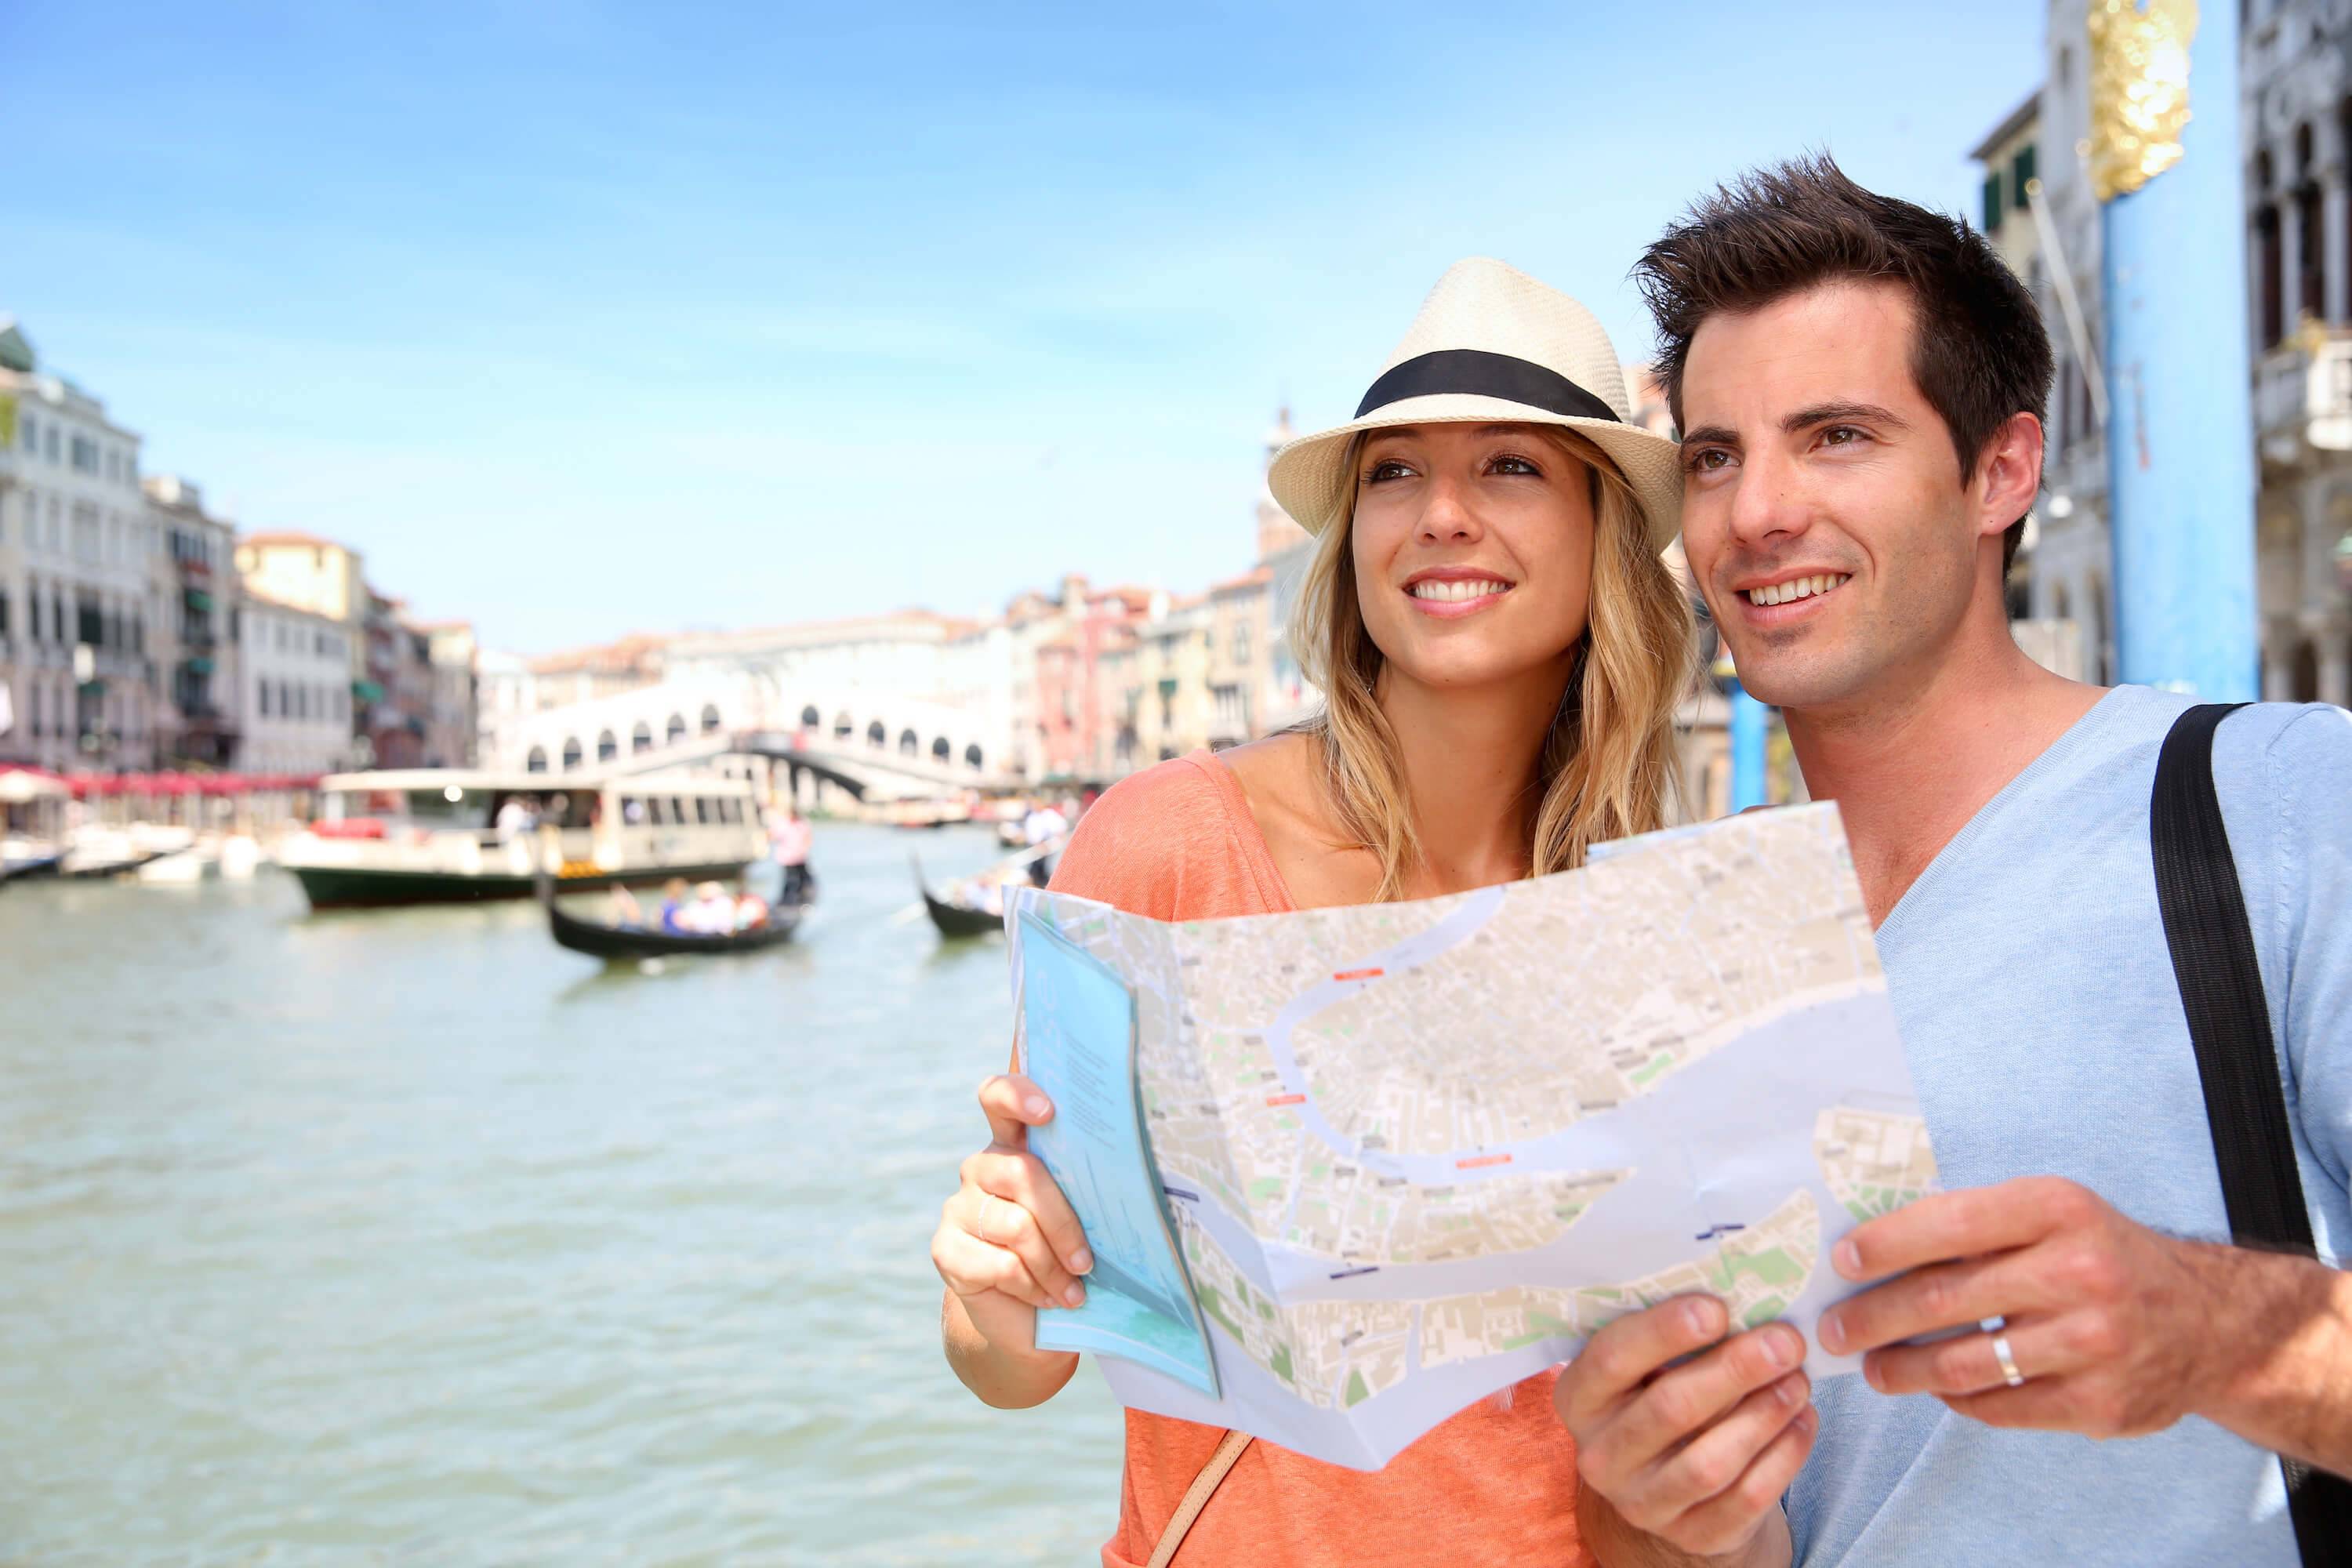 Хорошая жизнь в европе. Туристы в Европе. Счастливые люди путешествуют. Туризм за границей. Фотографии путешествий.